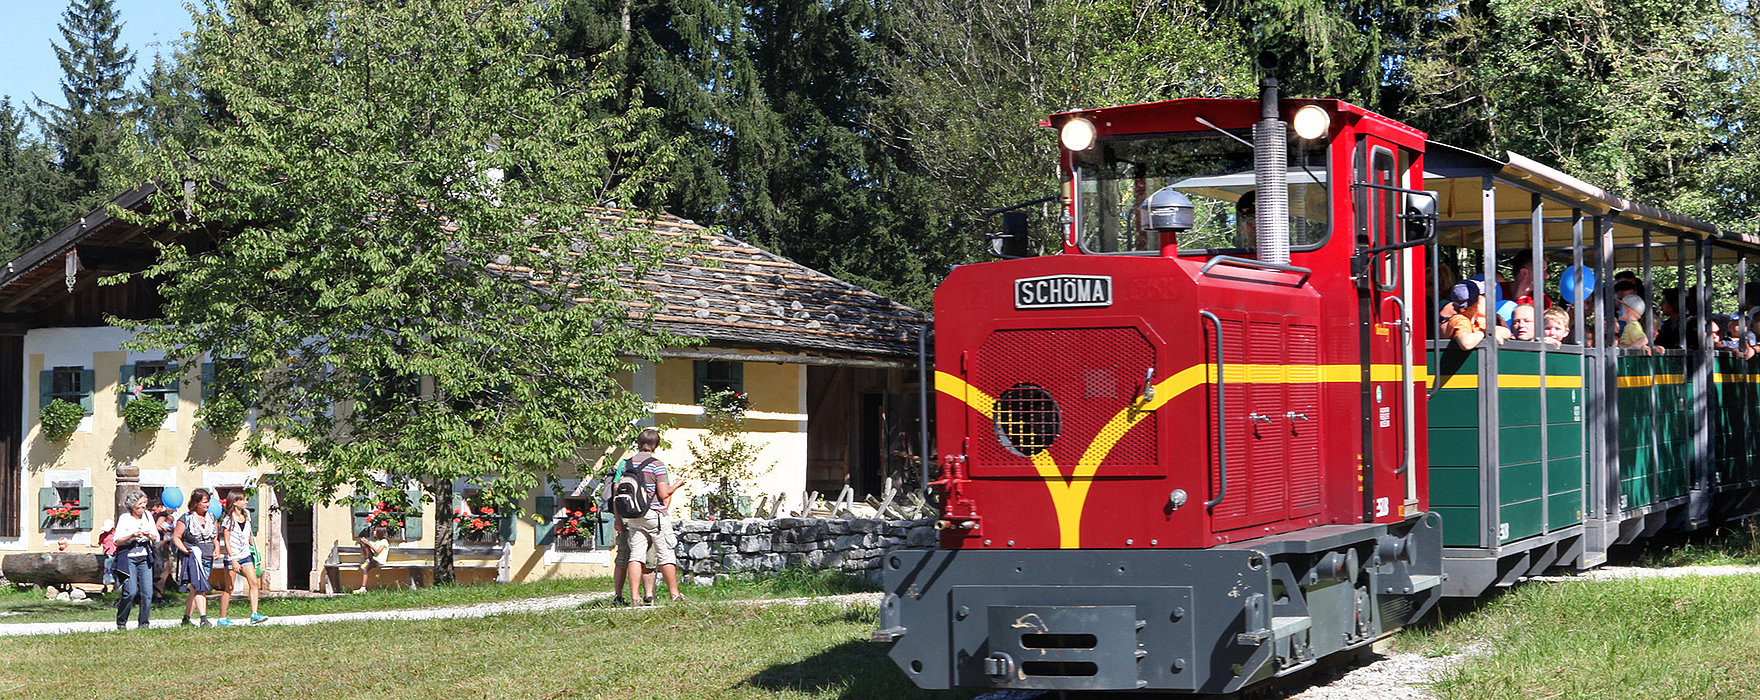 Salzburger Freilichtmuseum - Blick auf die Museumsbahn, die sich über 2 km erstreckt